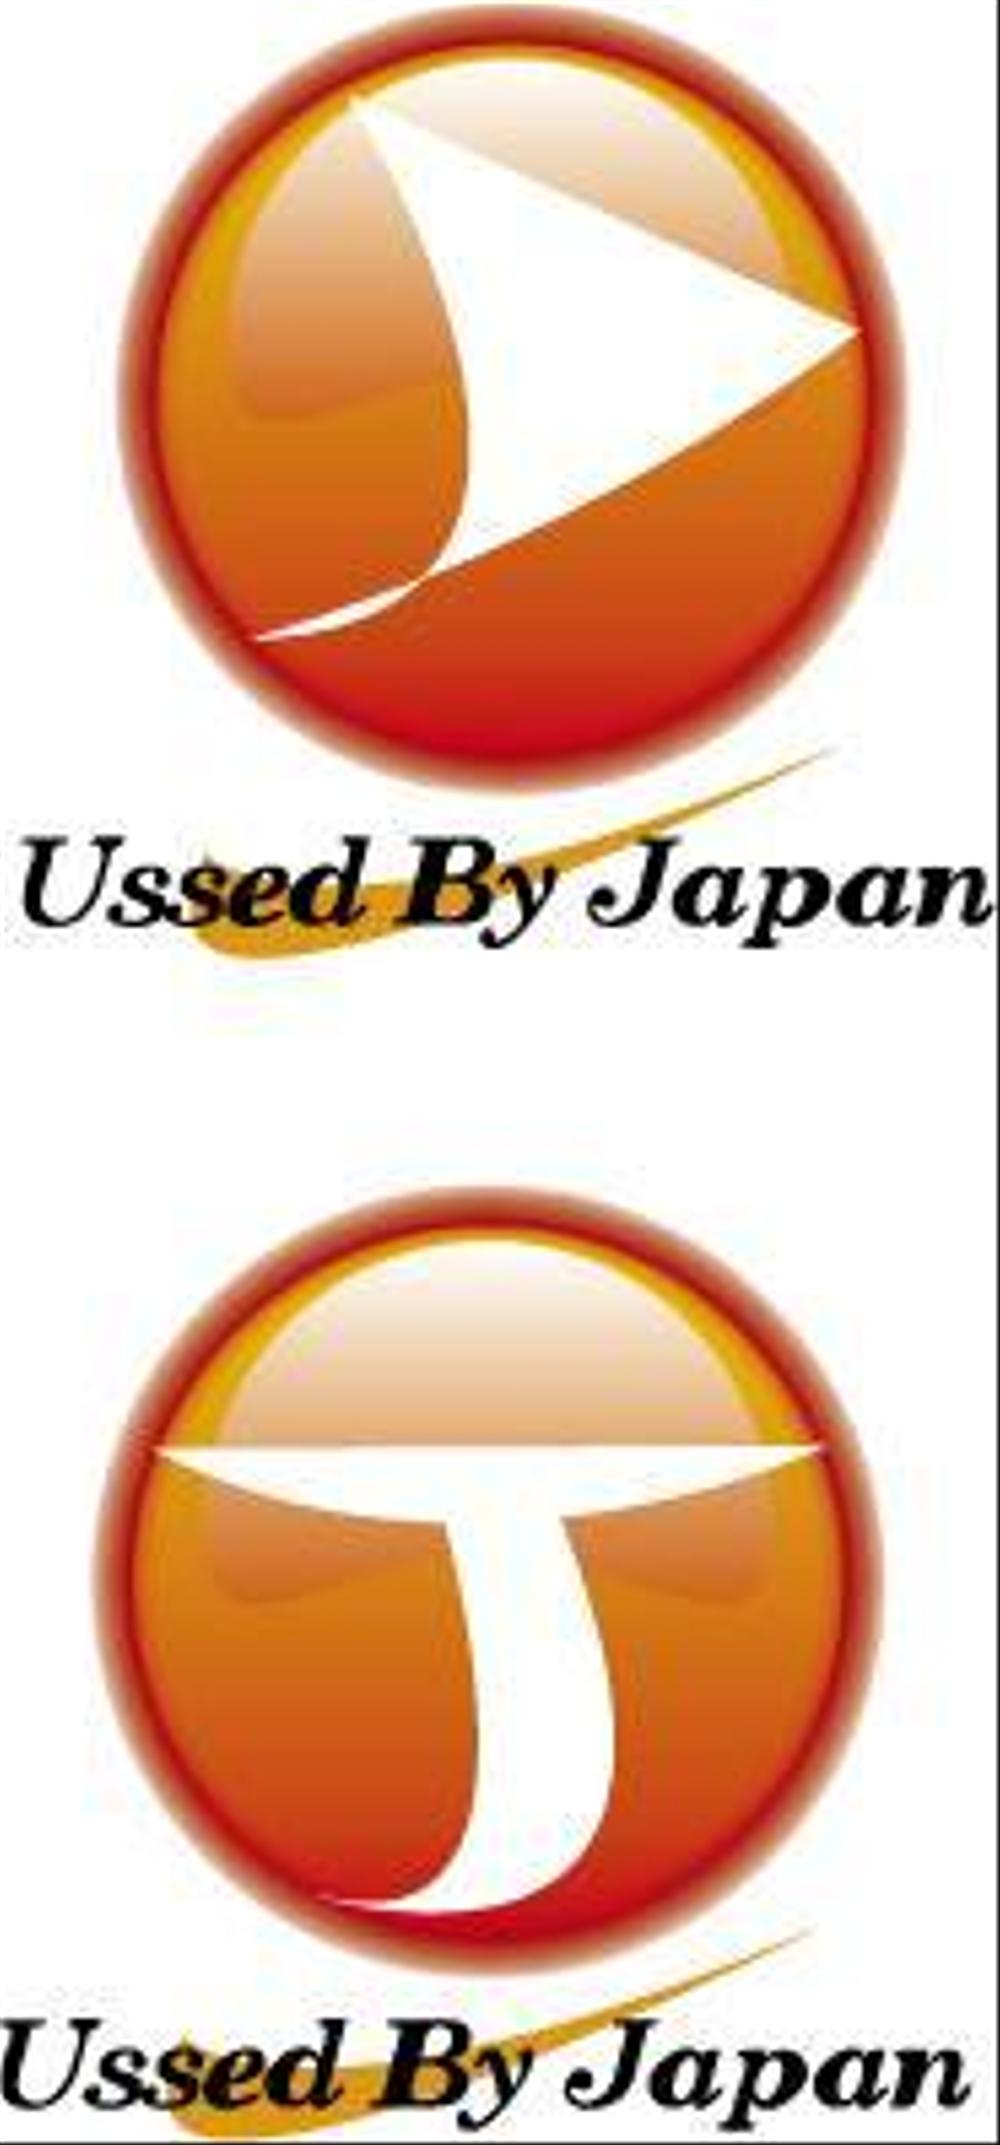 中古車輸出企業のロゴ